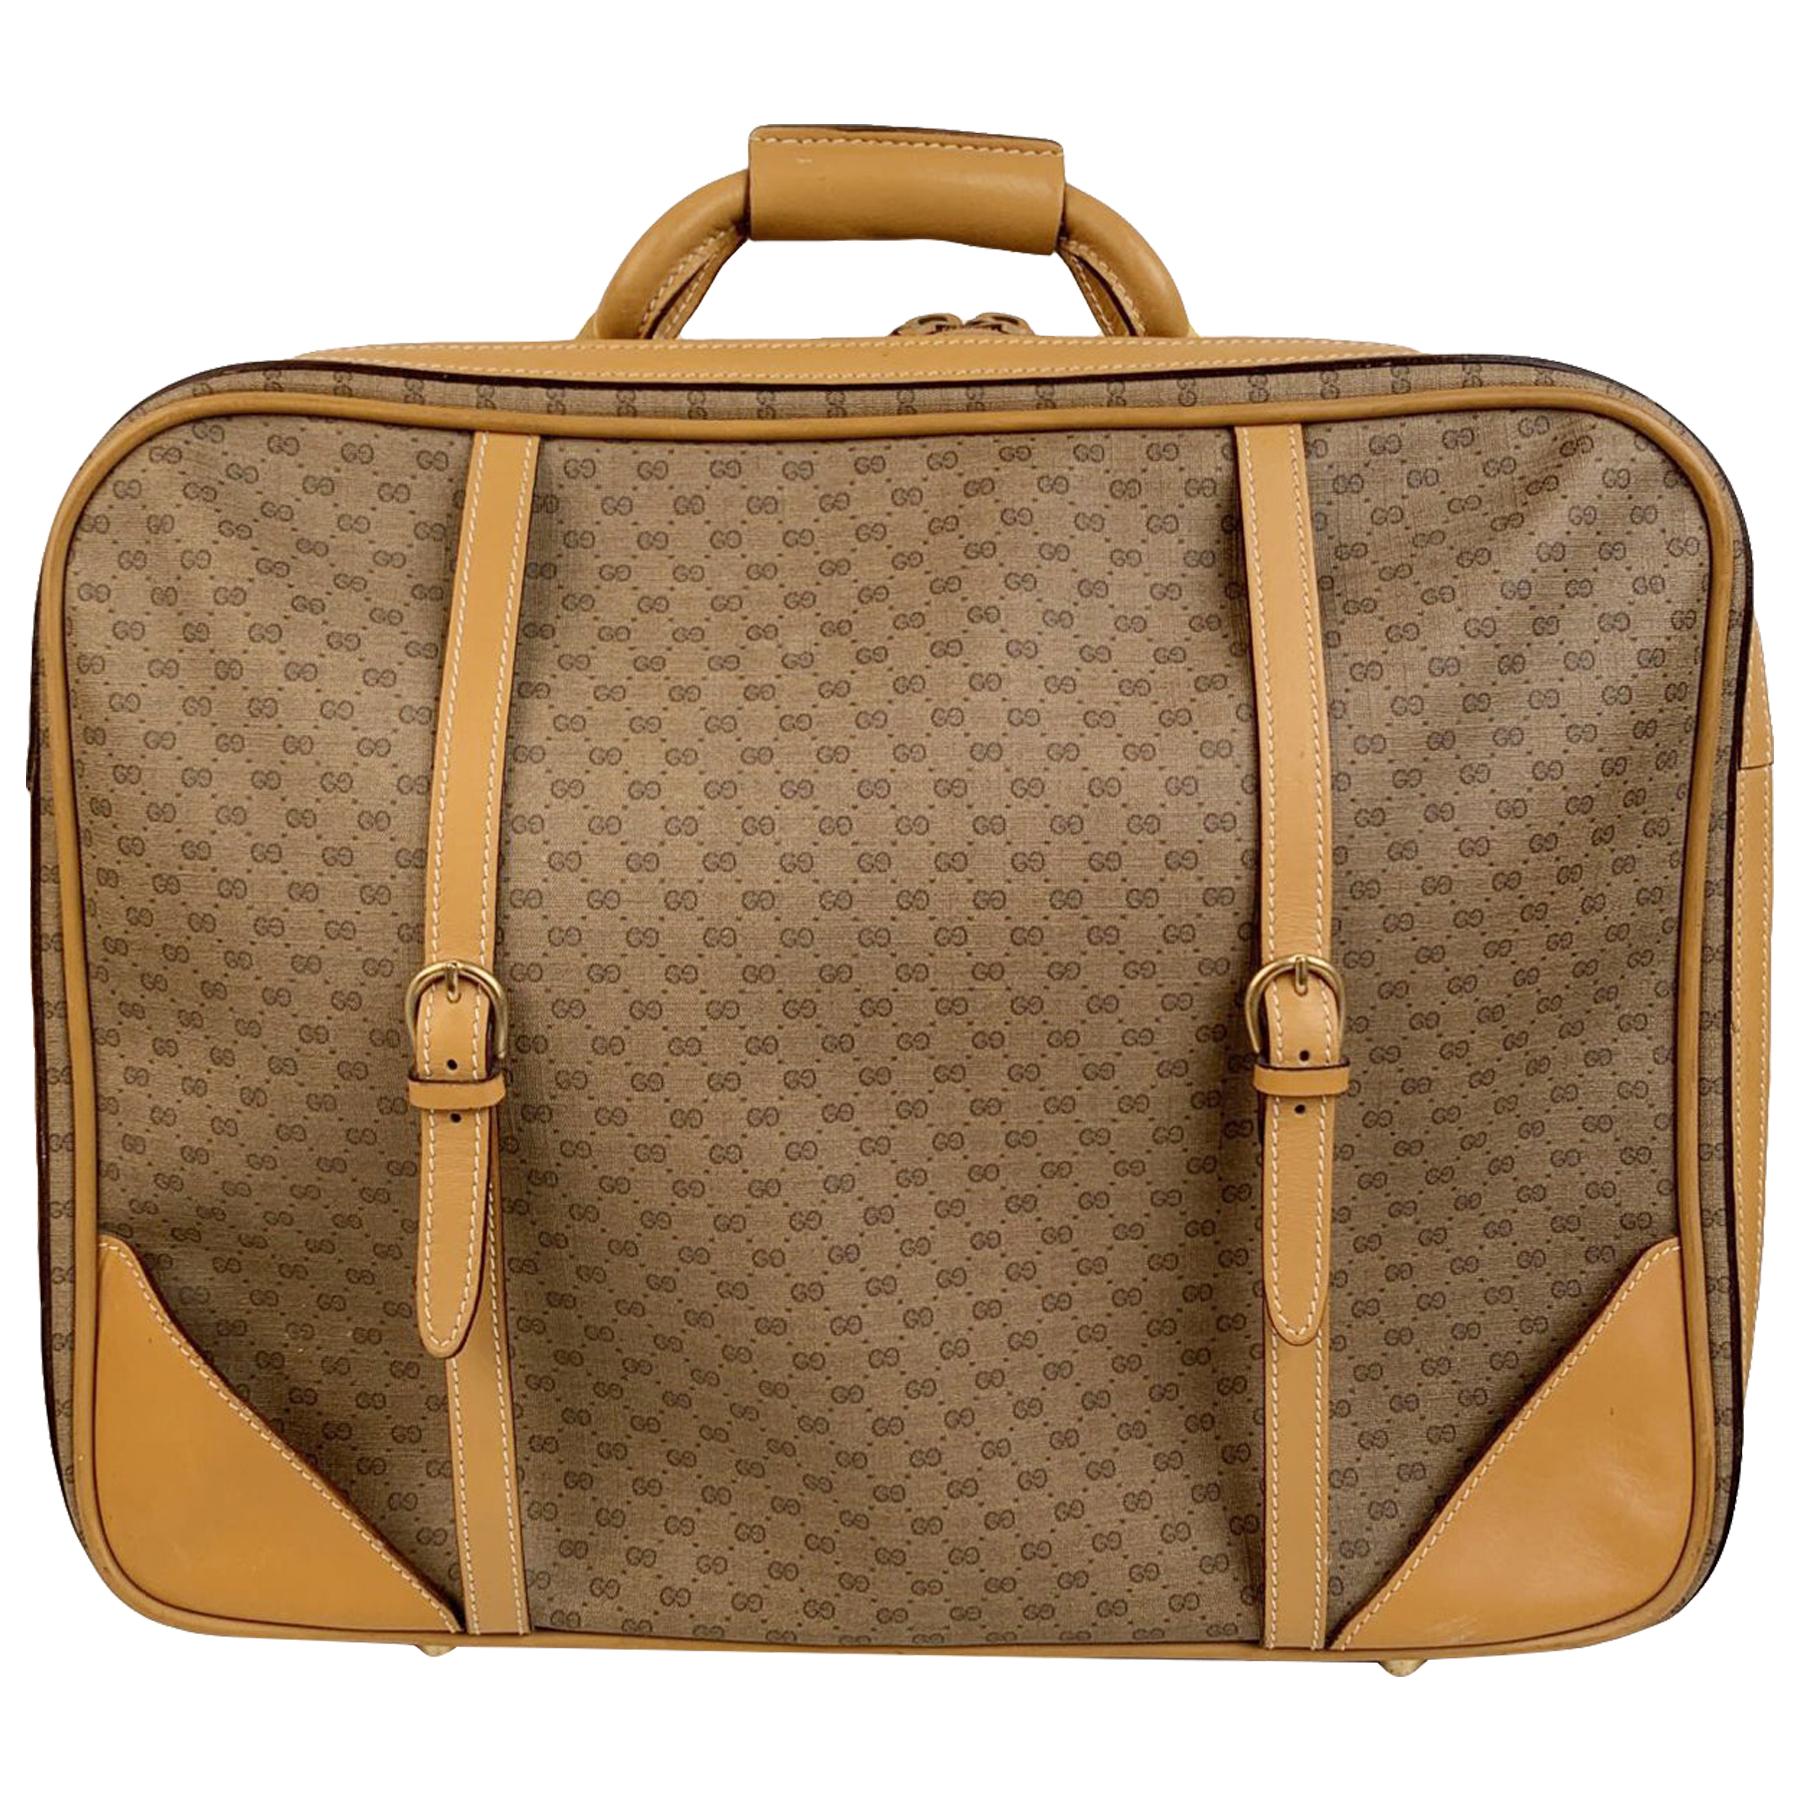 Gucci Vintage Beige Monogram Canvas Cabin Size Suitcase Travel Bag